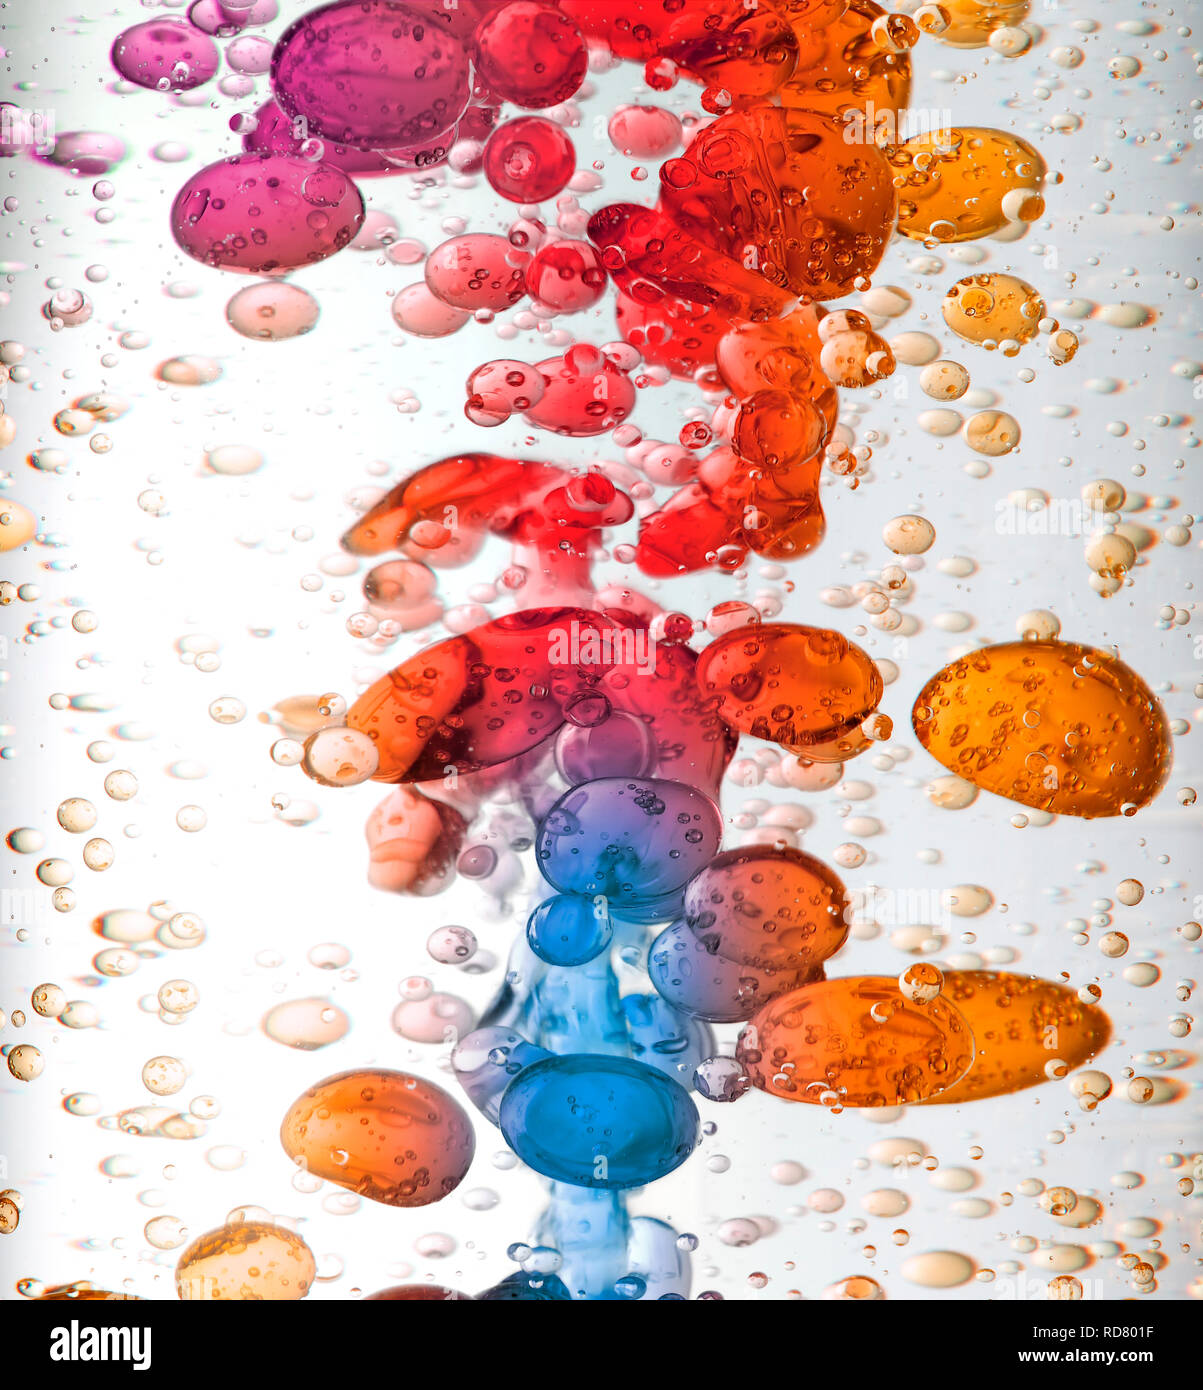 Cerca de mover las burbujas de colores en líquido, Foto de estudio Foto de stock